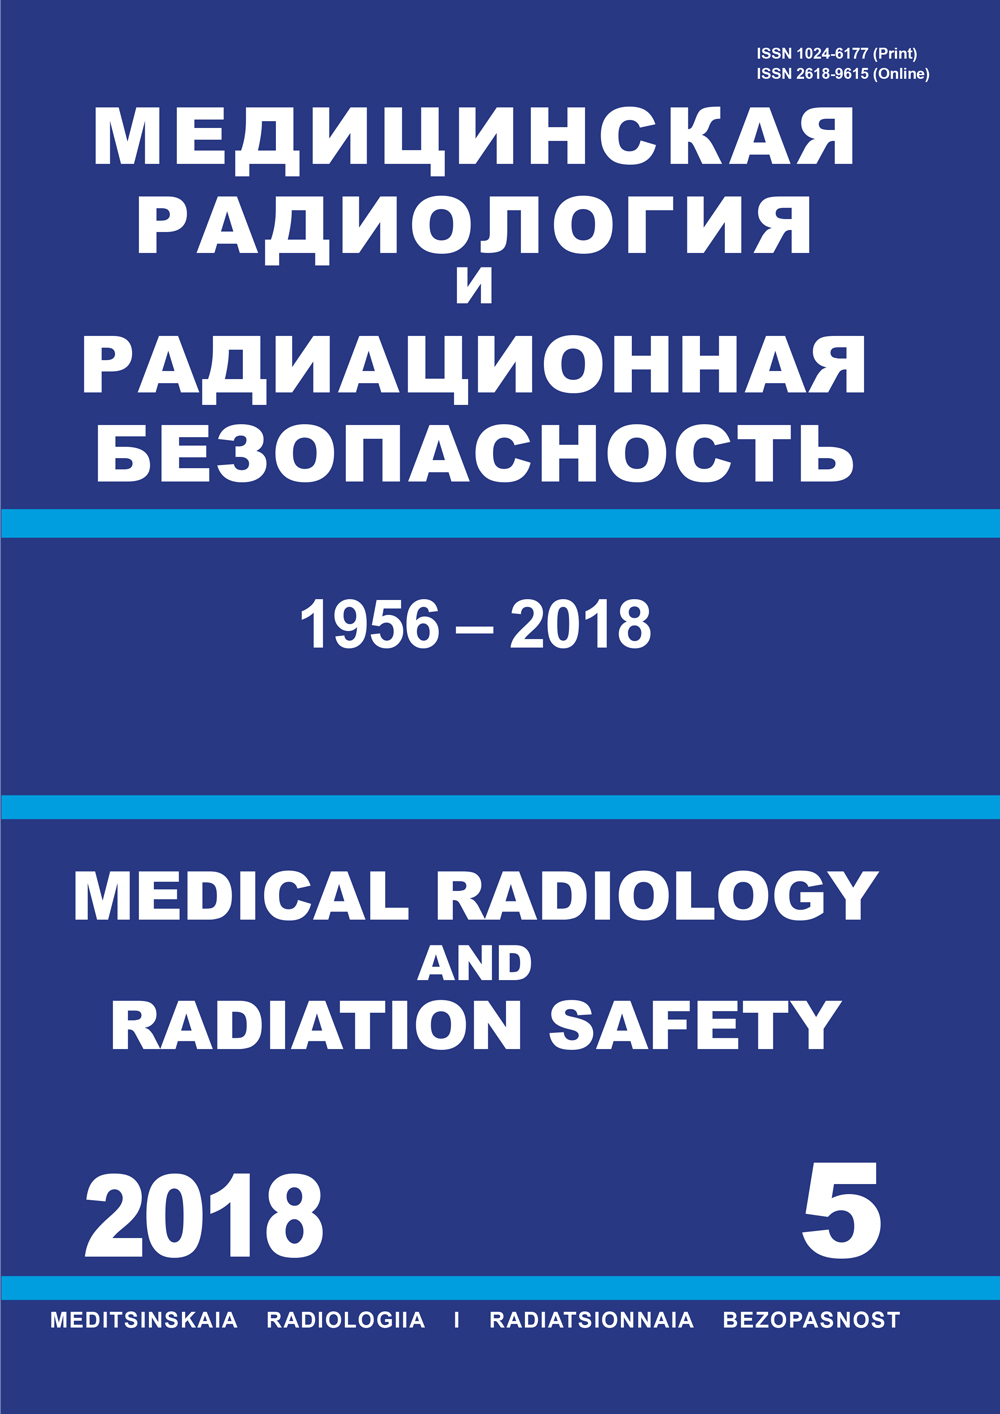             Итоги 65-й сессии Научного комитета по действию атомной радиации (НКДАР) ООН (Вена, 11–14 июня 2018 г.)
    